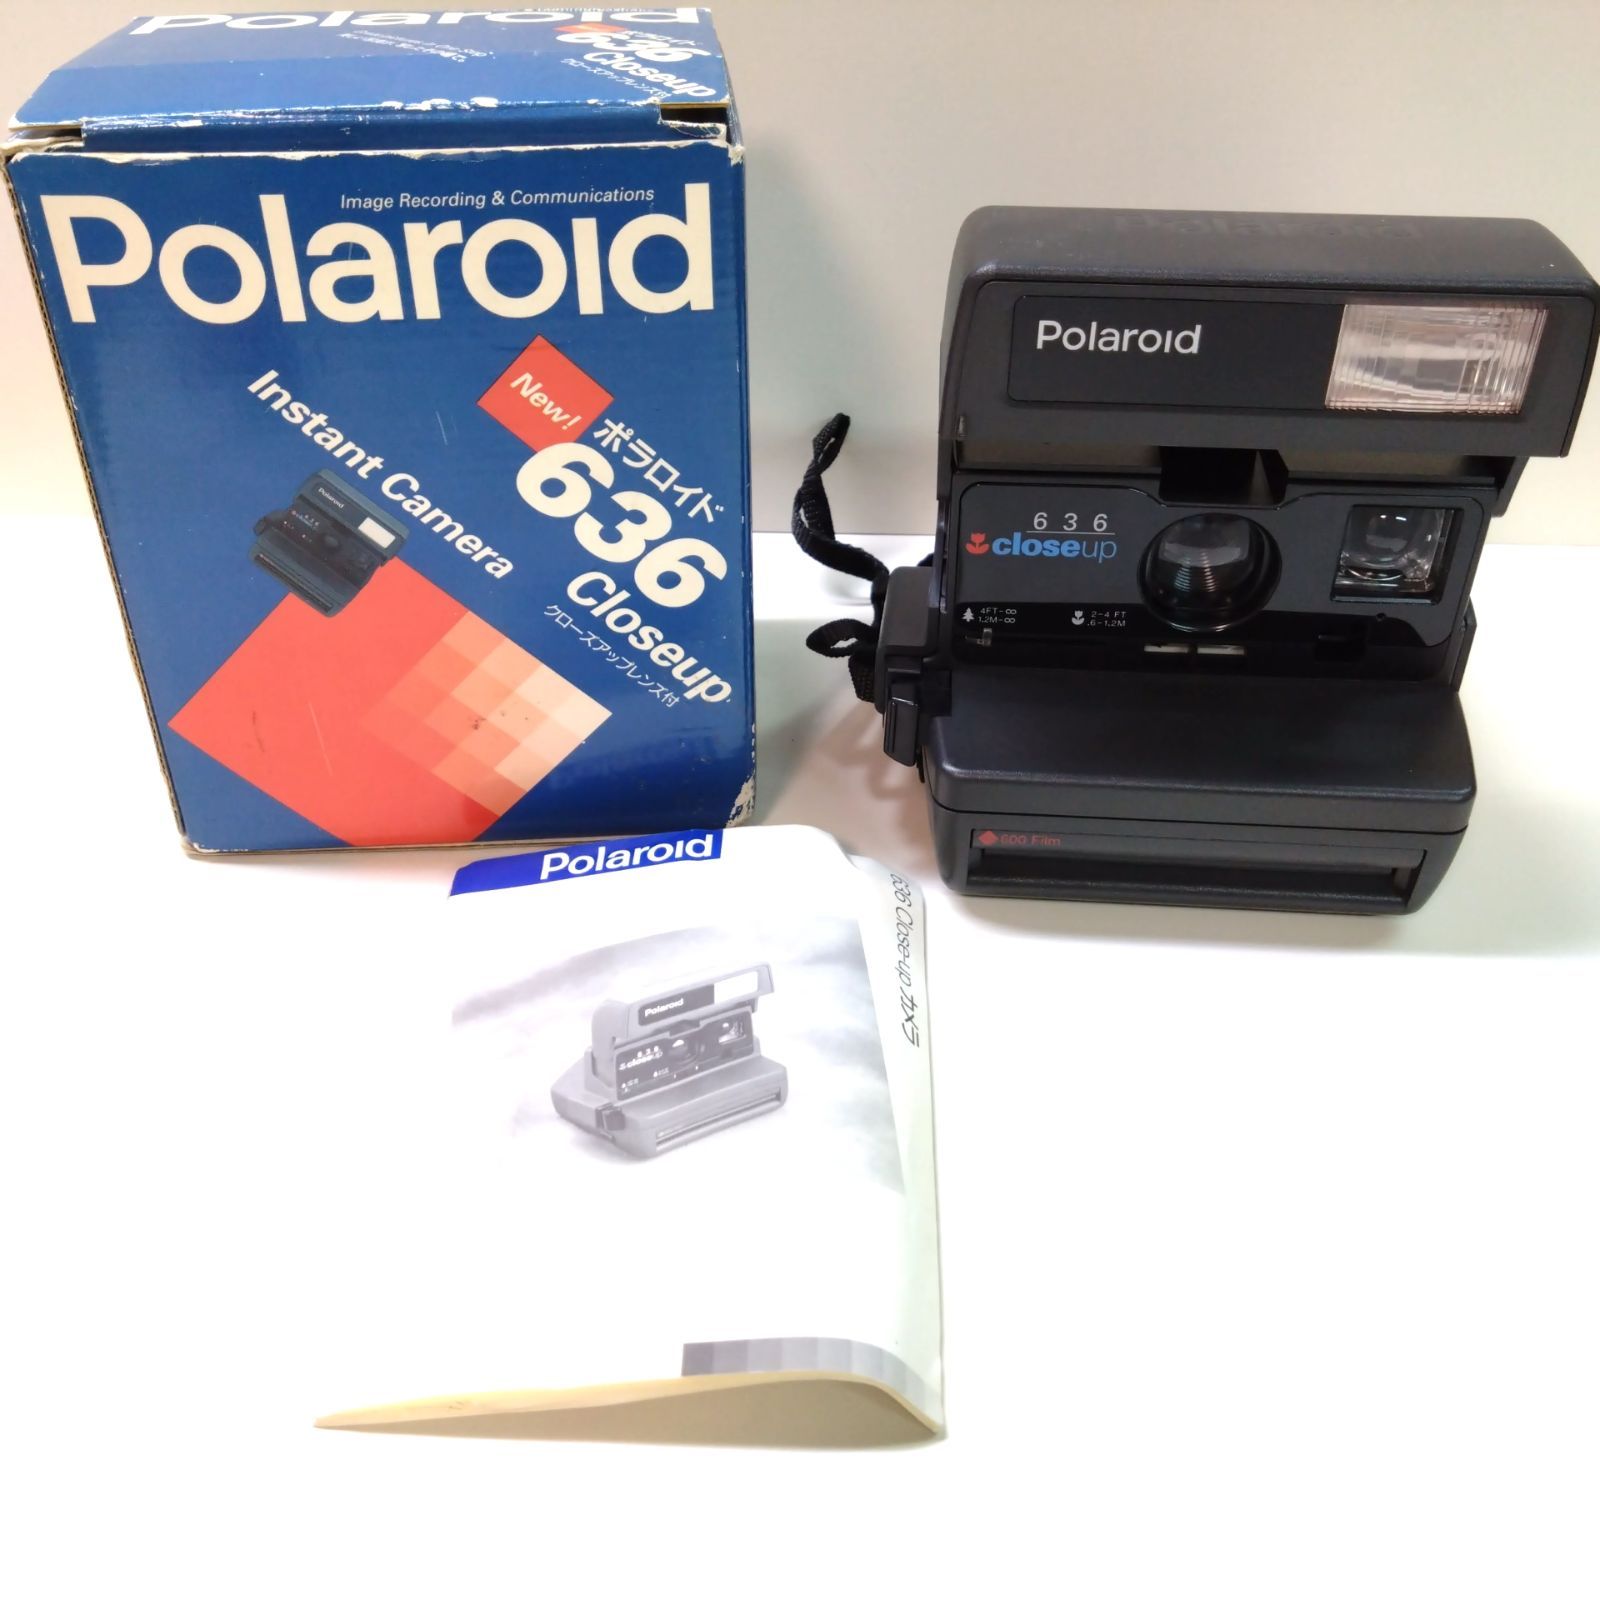 ポラロイド 636close-up - フィルムカメラ